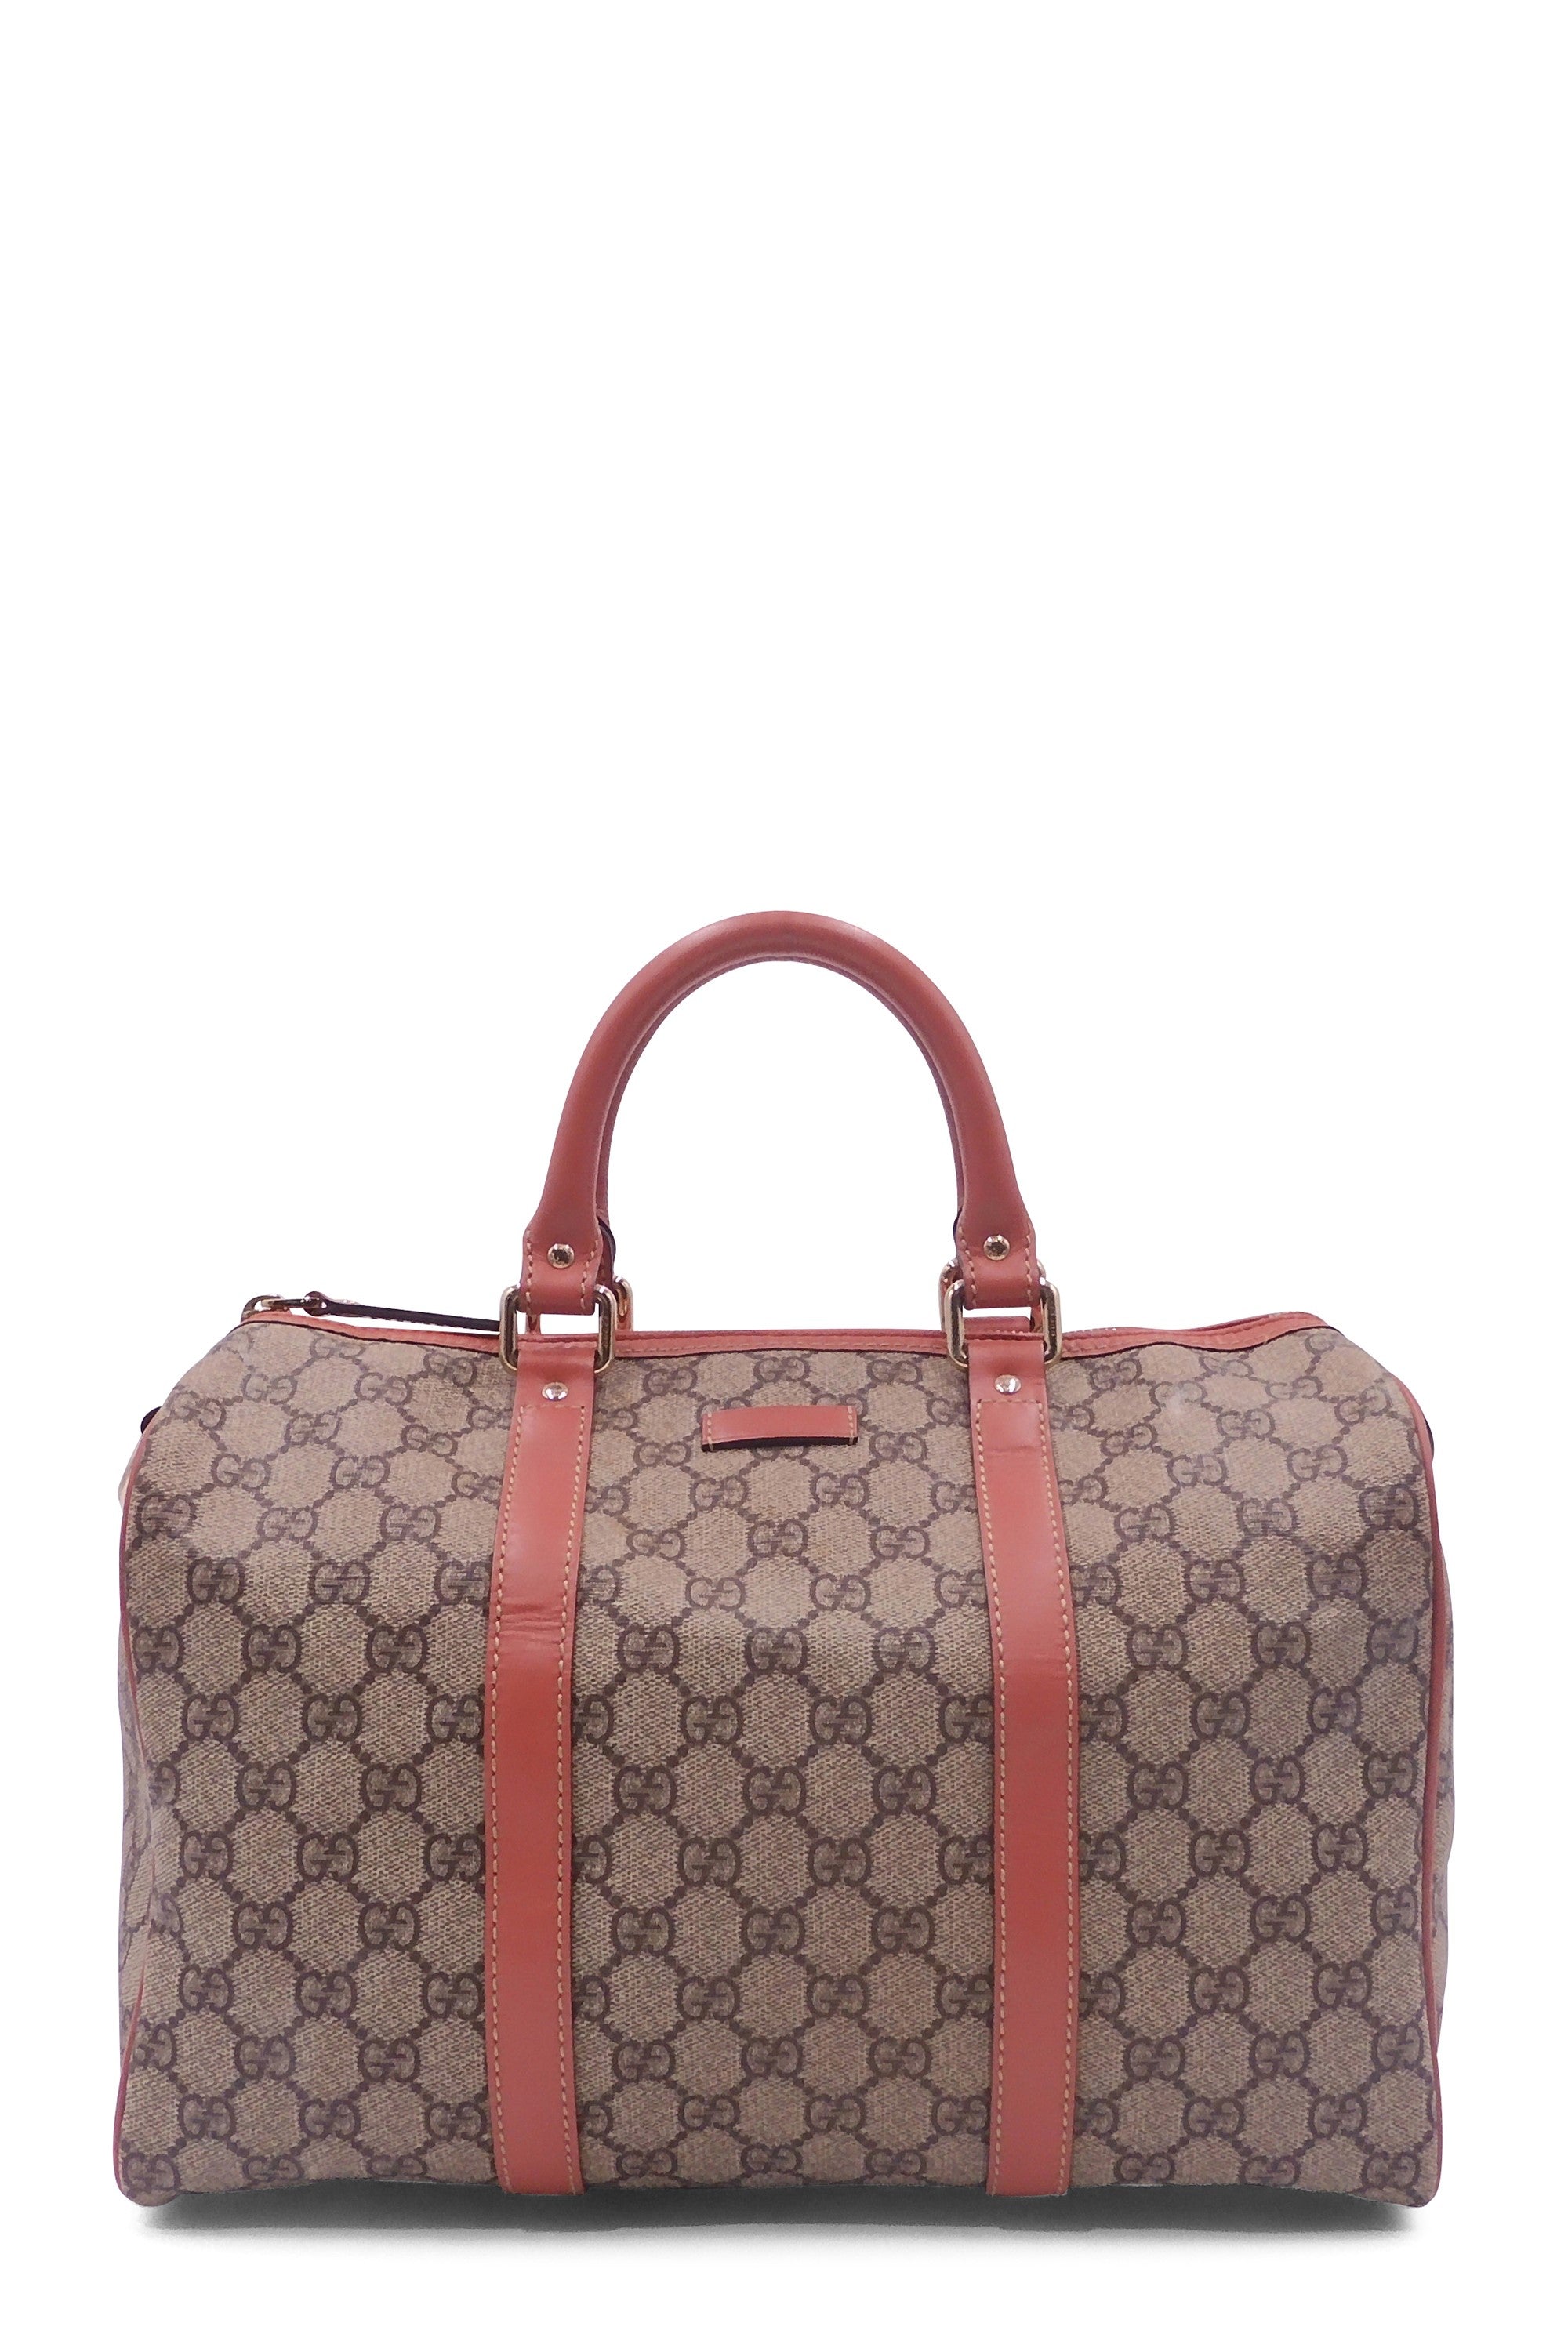 Gucci GoldBeige GG Crystal Canvas and Leather Medium Joy Shoulder Bag